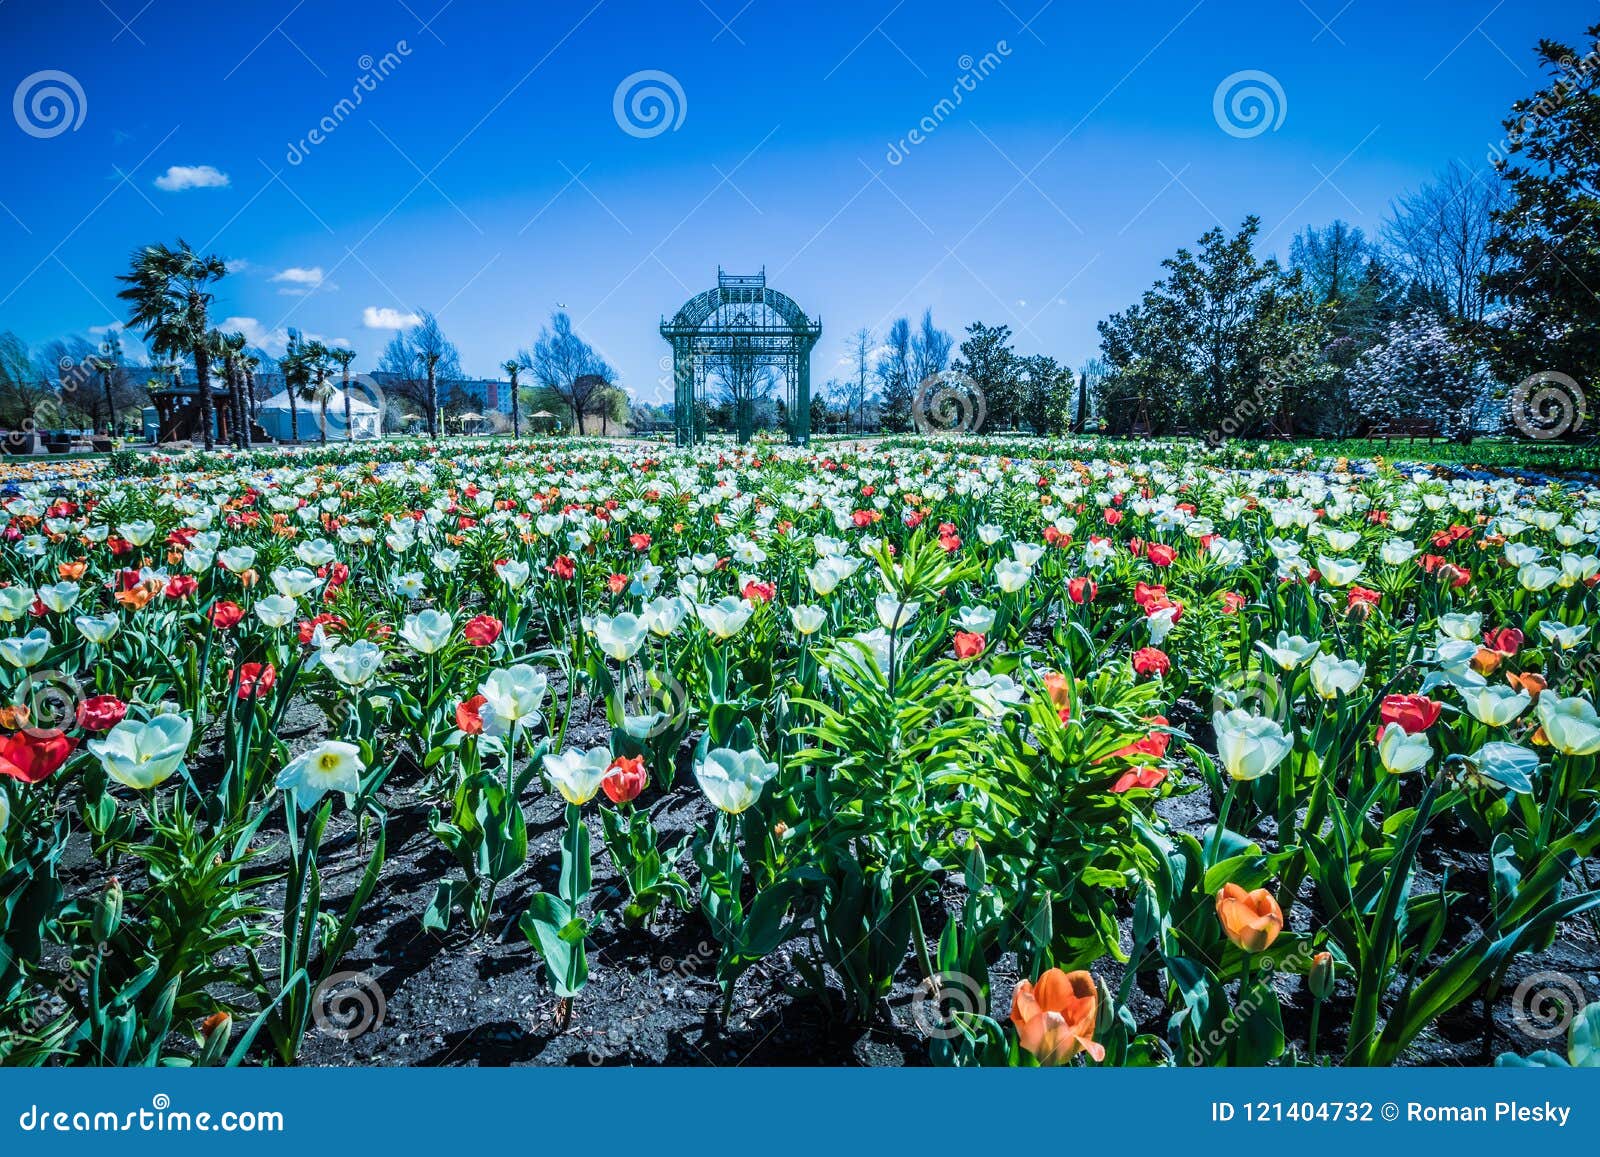 the famous flower gardens hirschstetten in vienna, austria stock